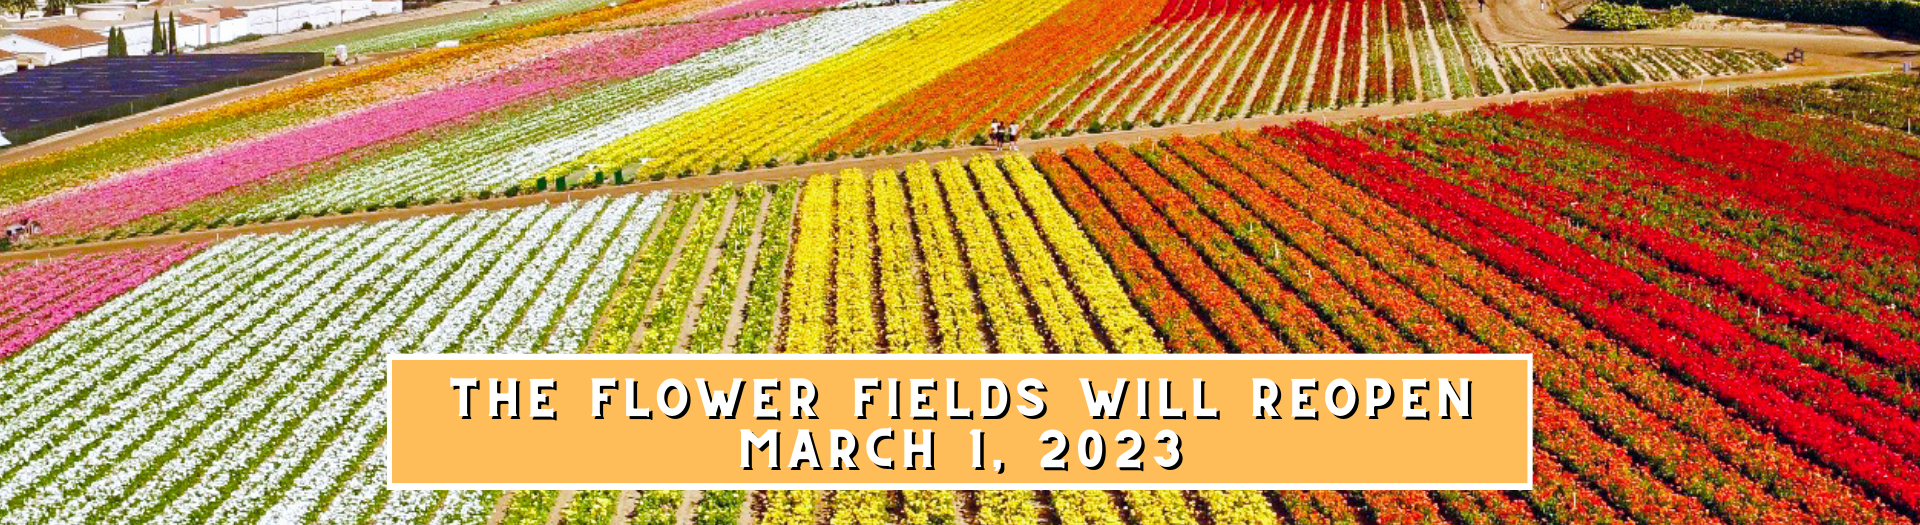 Carlsbad Flower Fields Opening in March!